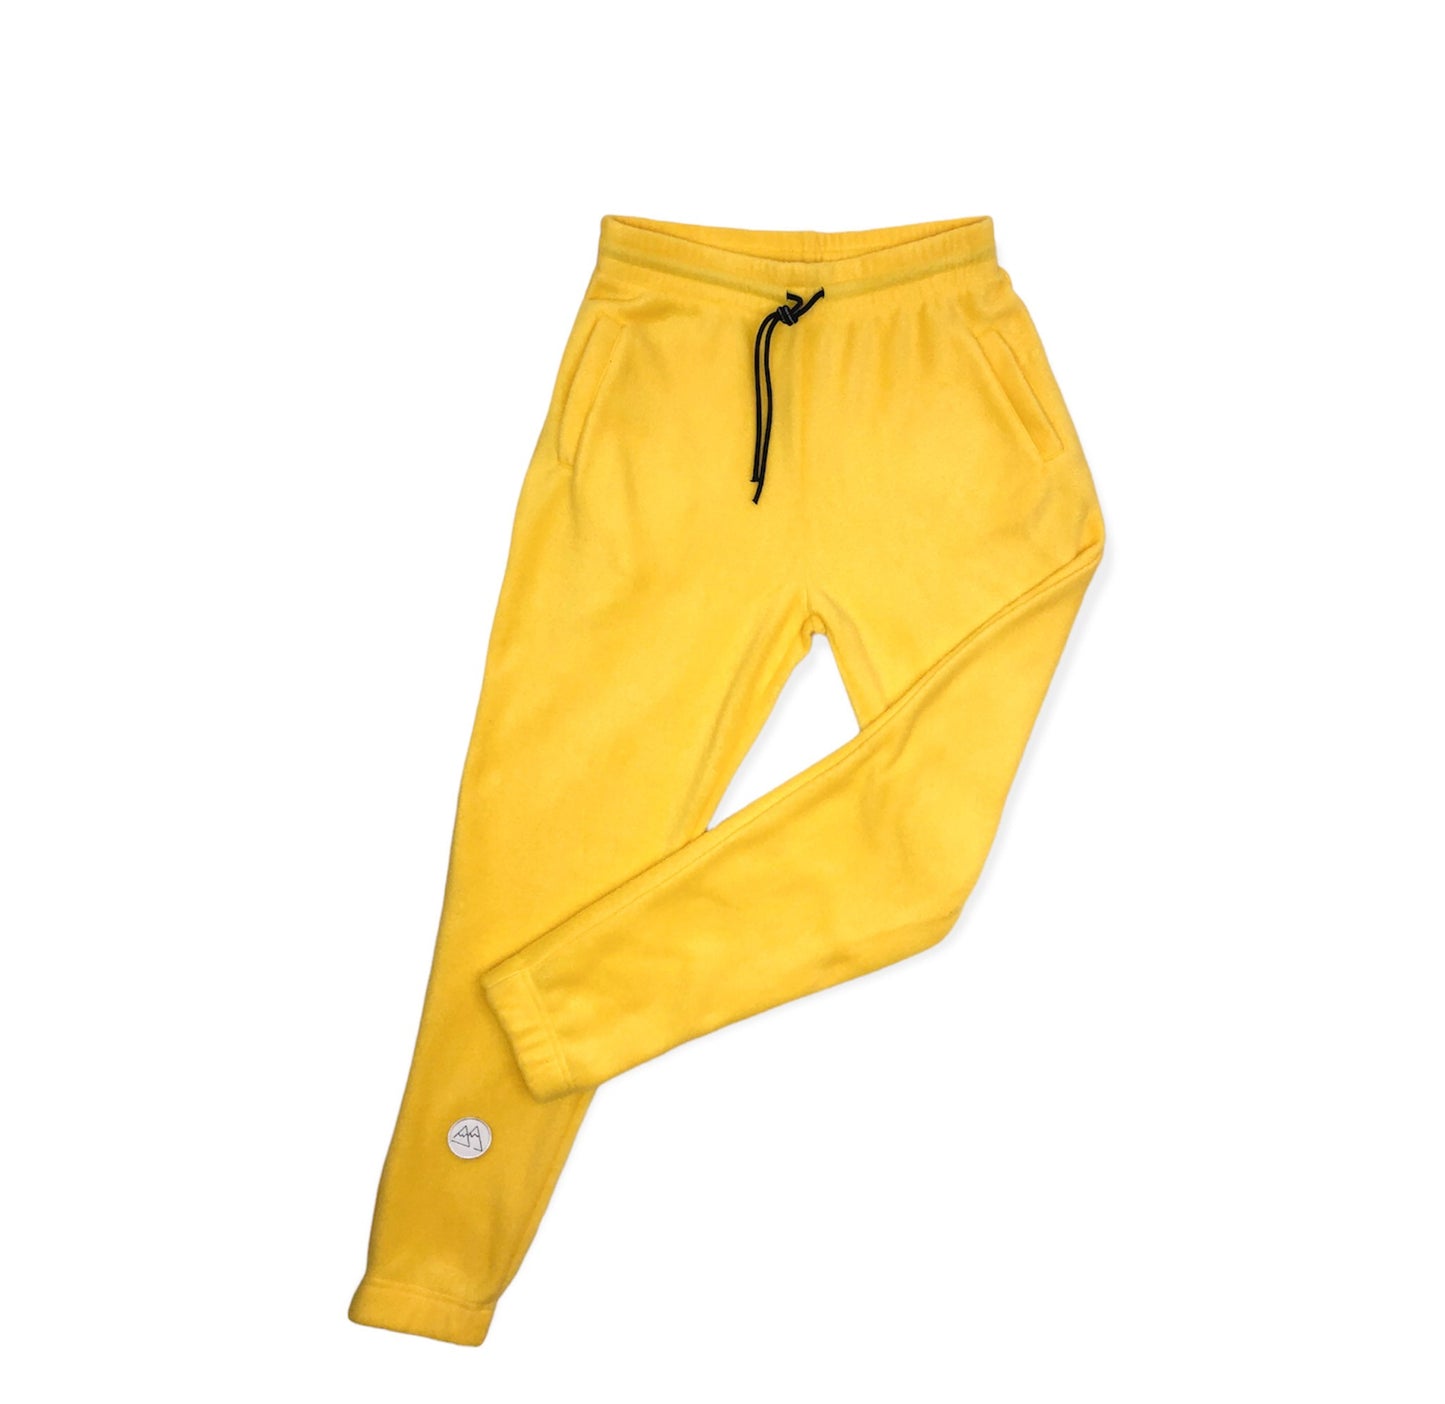 Adult pants - Yellow